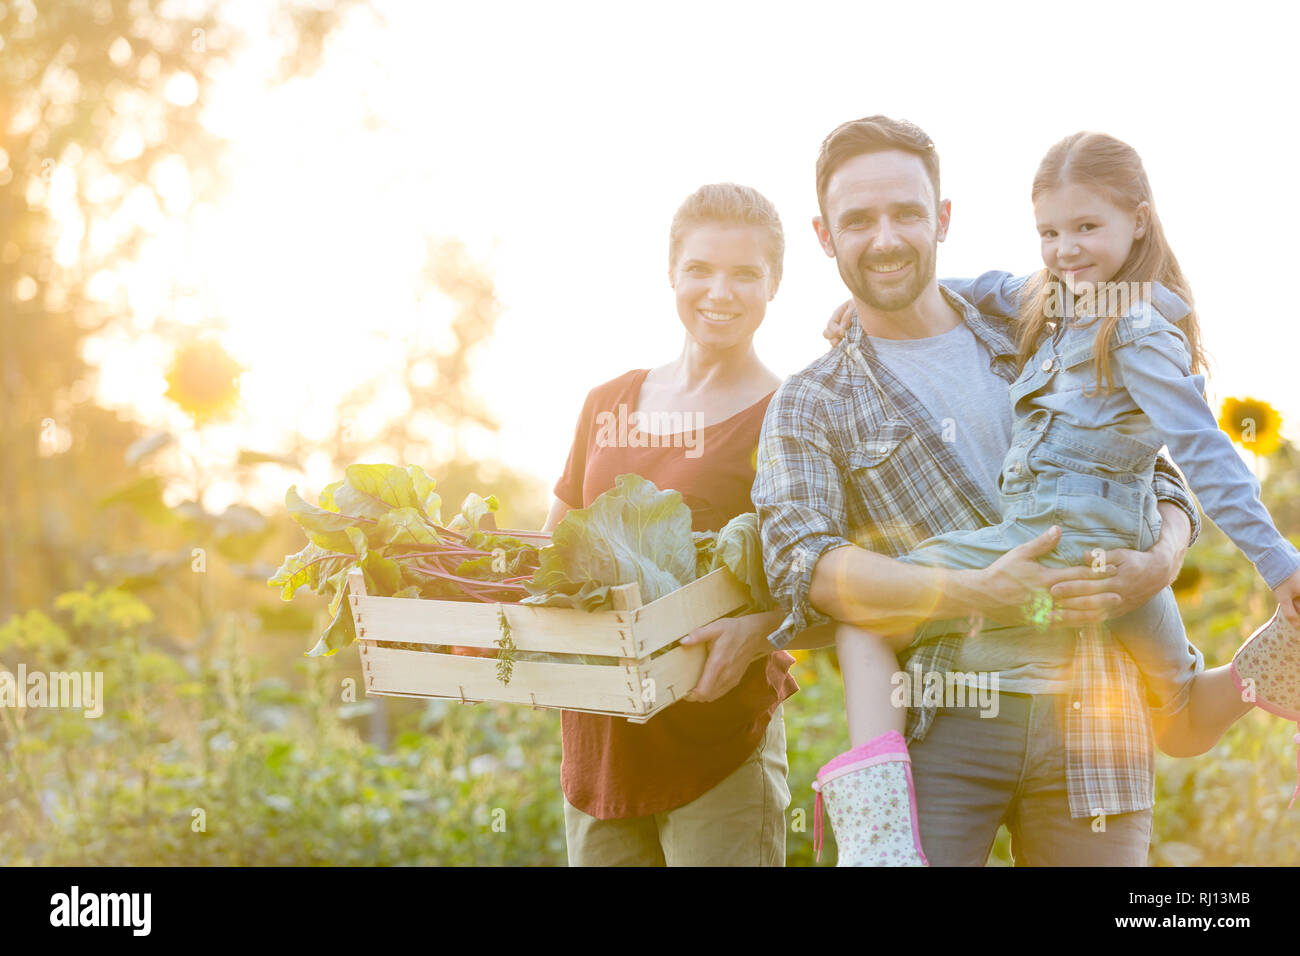 Portrait of smiling family avec des légumes dans la caisse au niveau de l'exploitation Banque D'Images